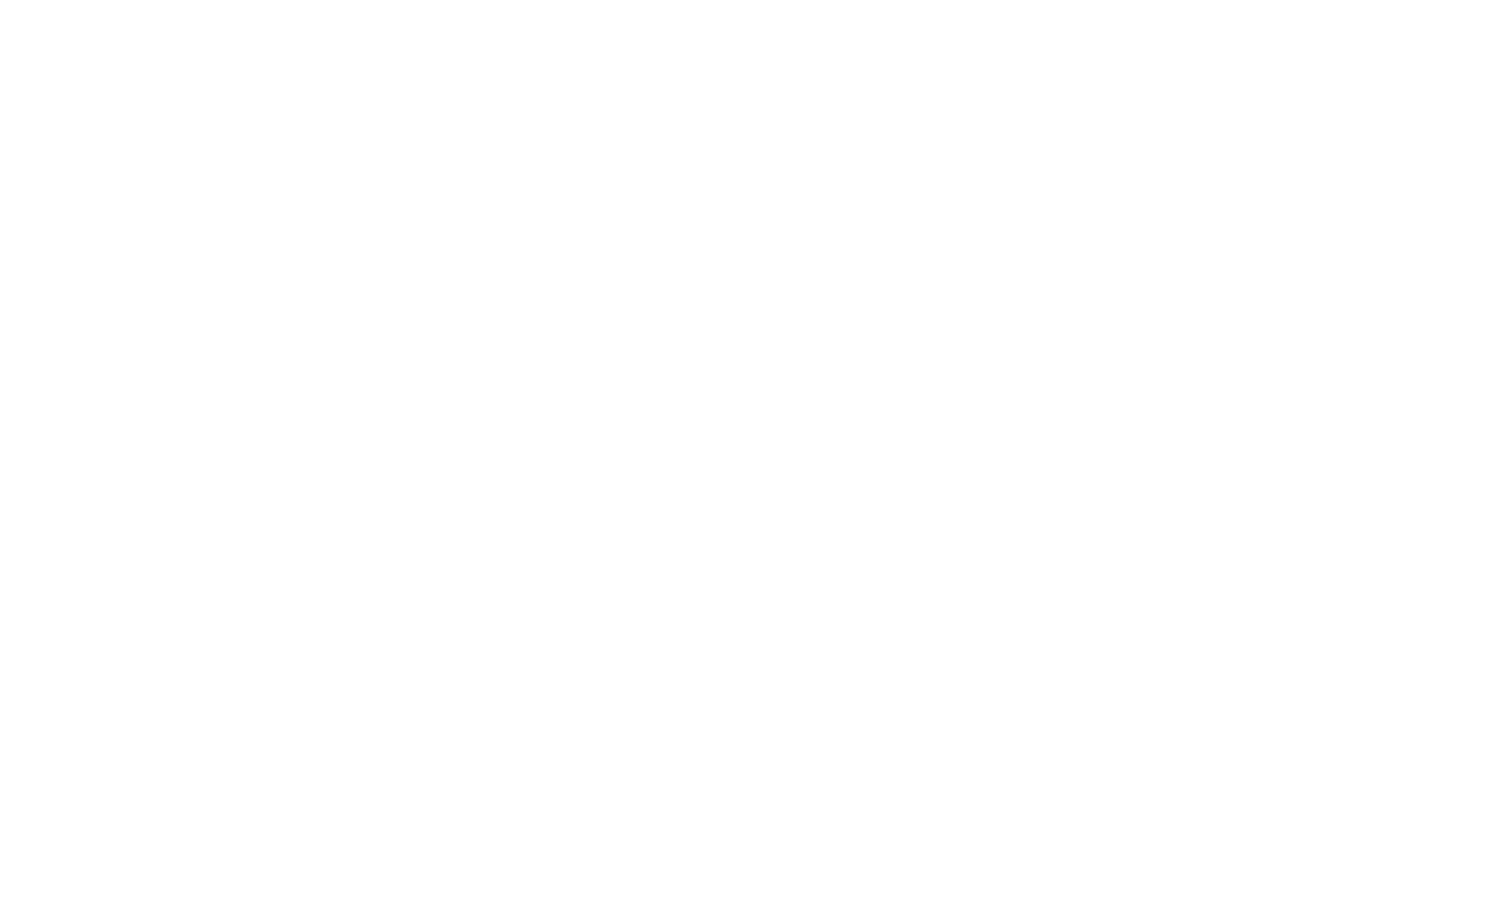 Katie Gilbert